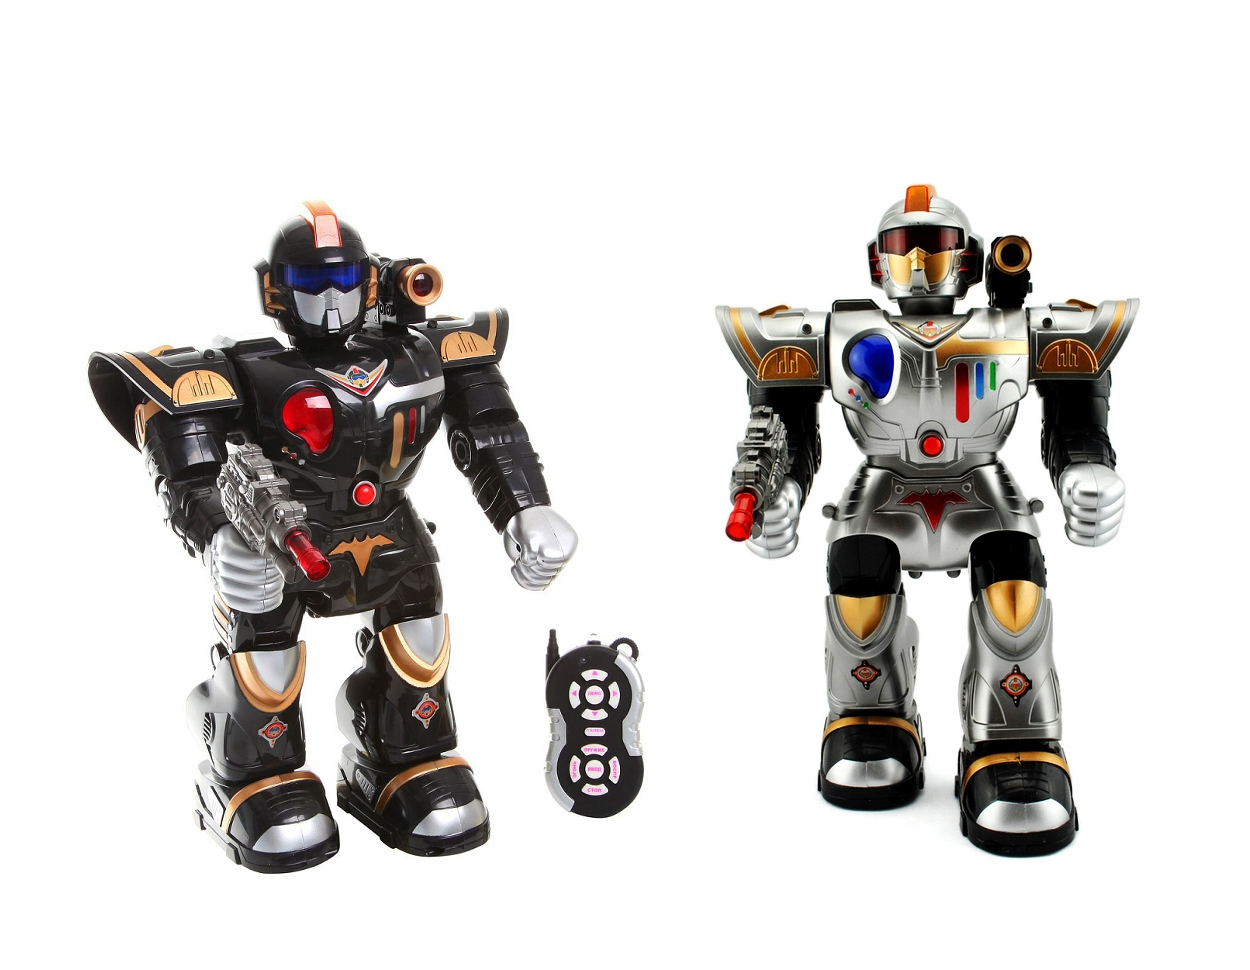 Можно роботы игрушки. Радиоуправляемый робот космический десант. Робот Shantou Gepai космический десант tt713b. Робот игрушка для мальчика. Роботы игрушки роботы.